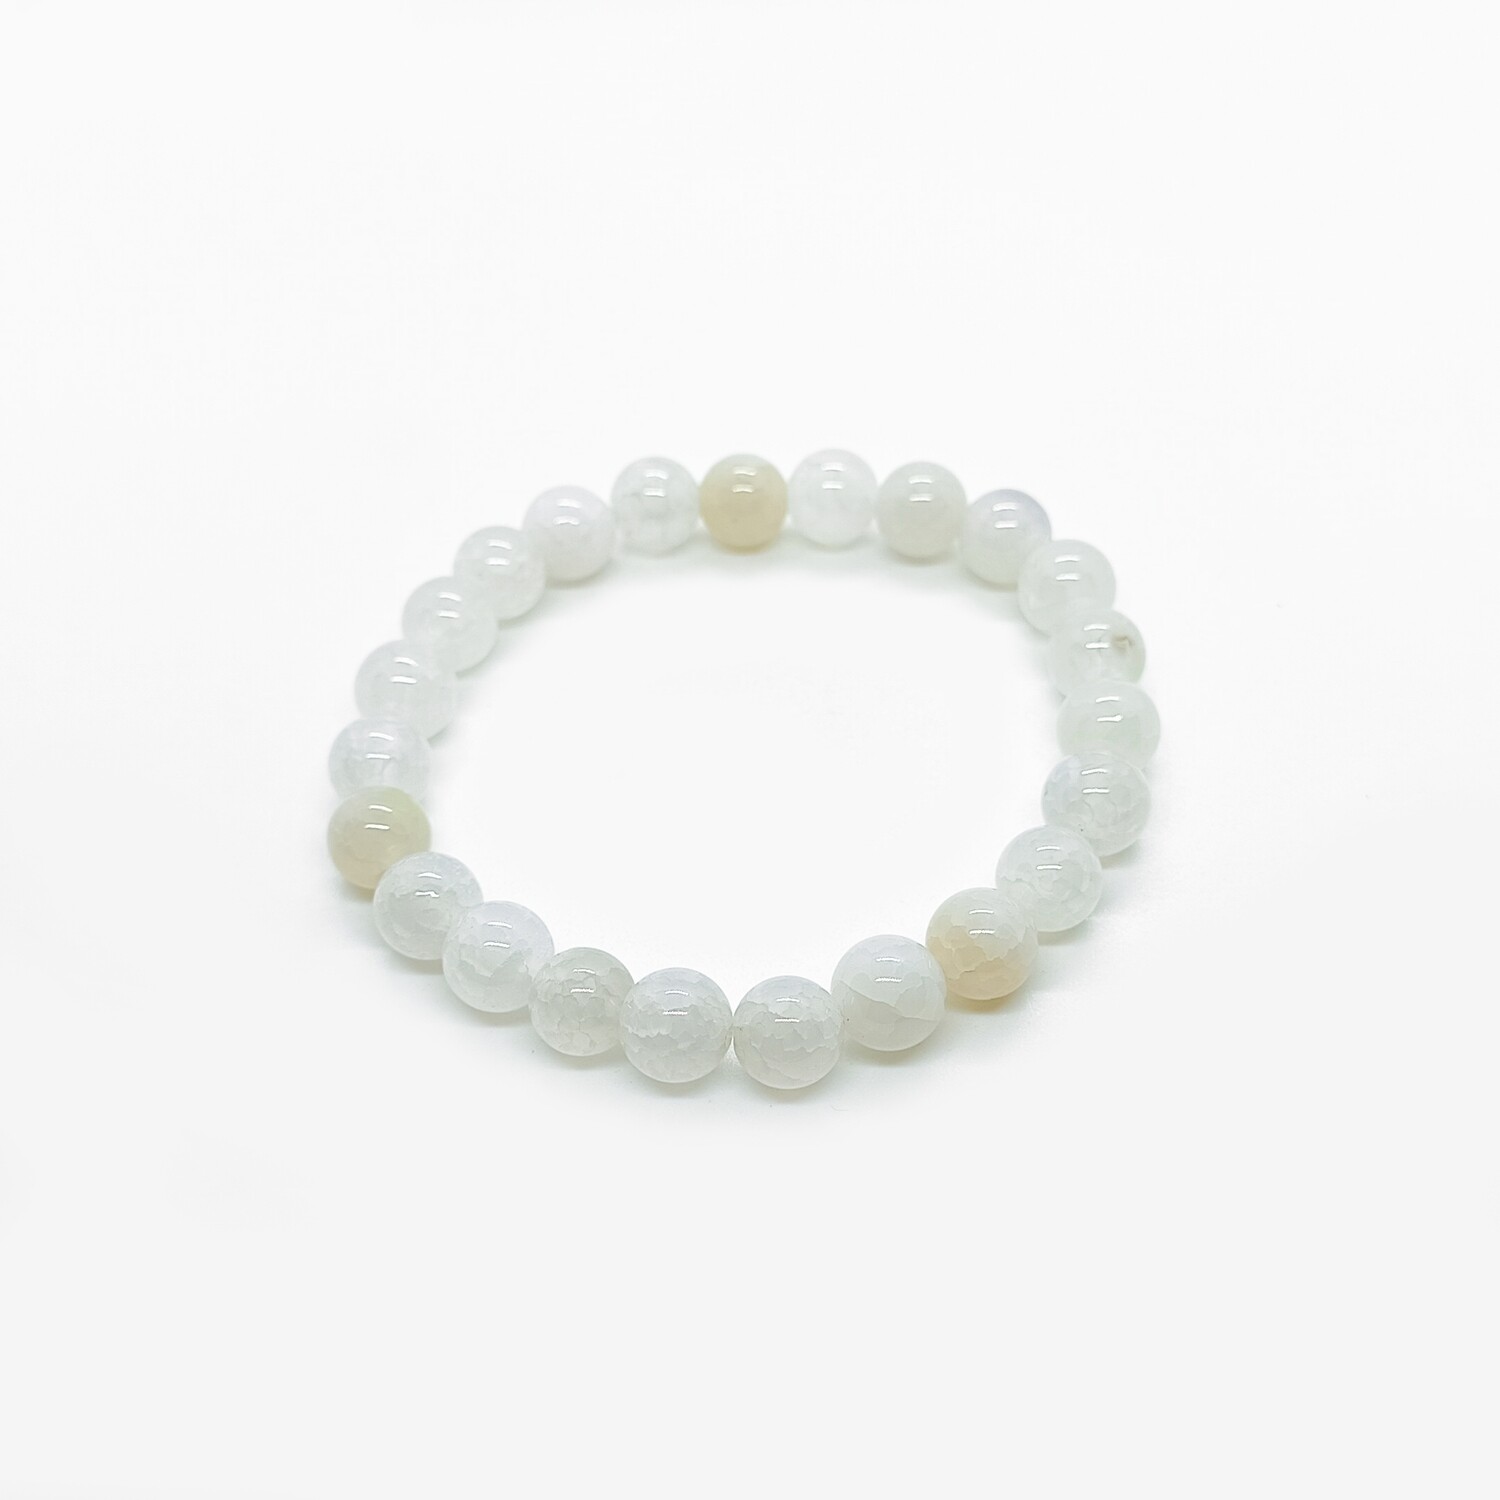 White Dragon stone bracelet